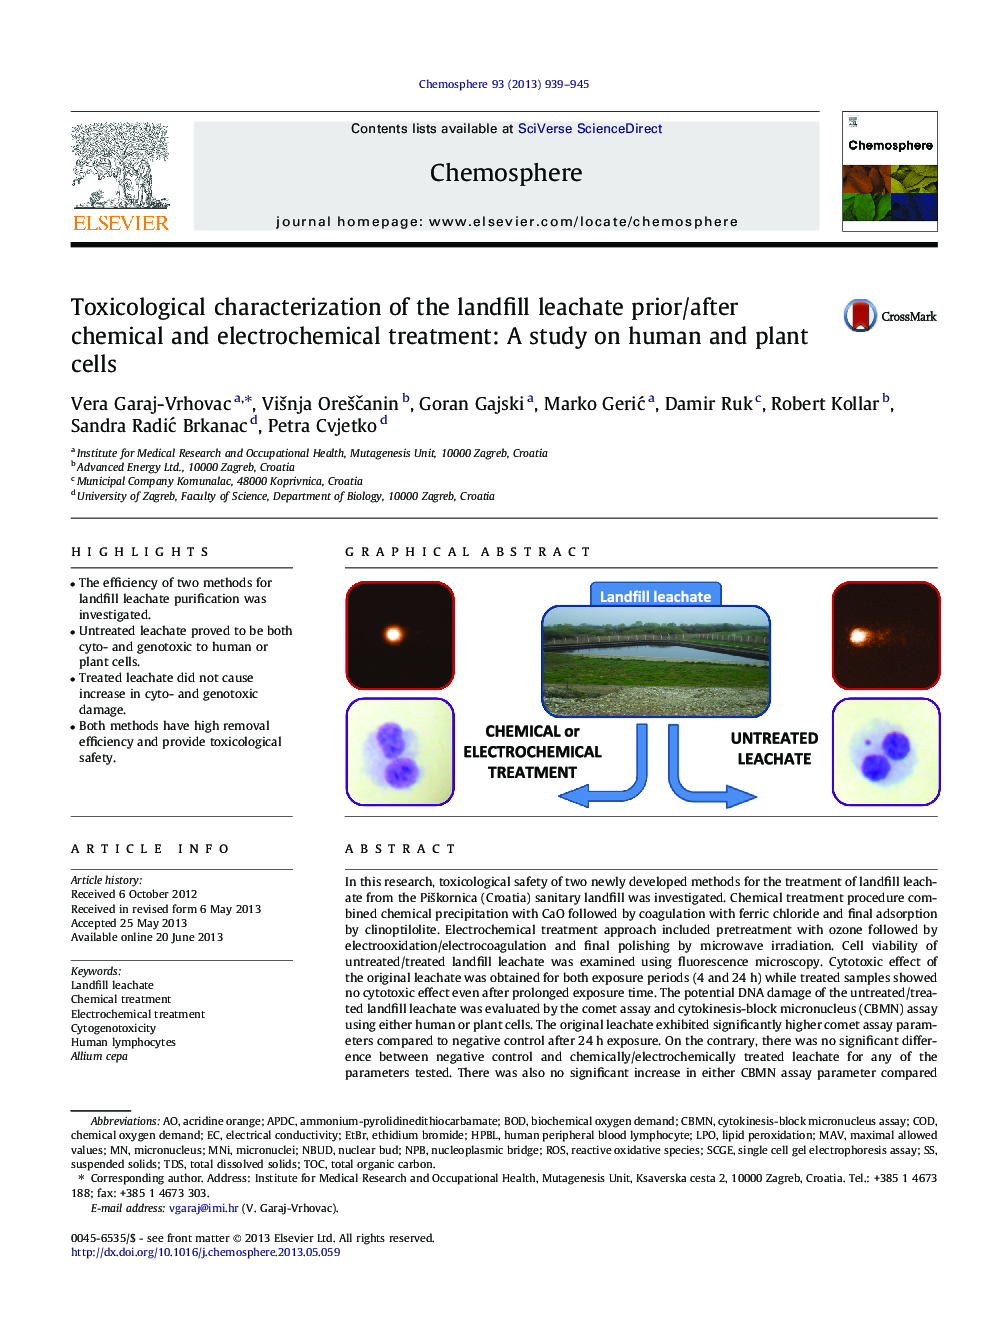 خصوصیات سم شناسی شیلات زباله قبل و بعد از درمان شیمیایی و الکتروشیمیایی: مطالعه بر روی سلول های انسانی و گیاهی 